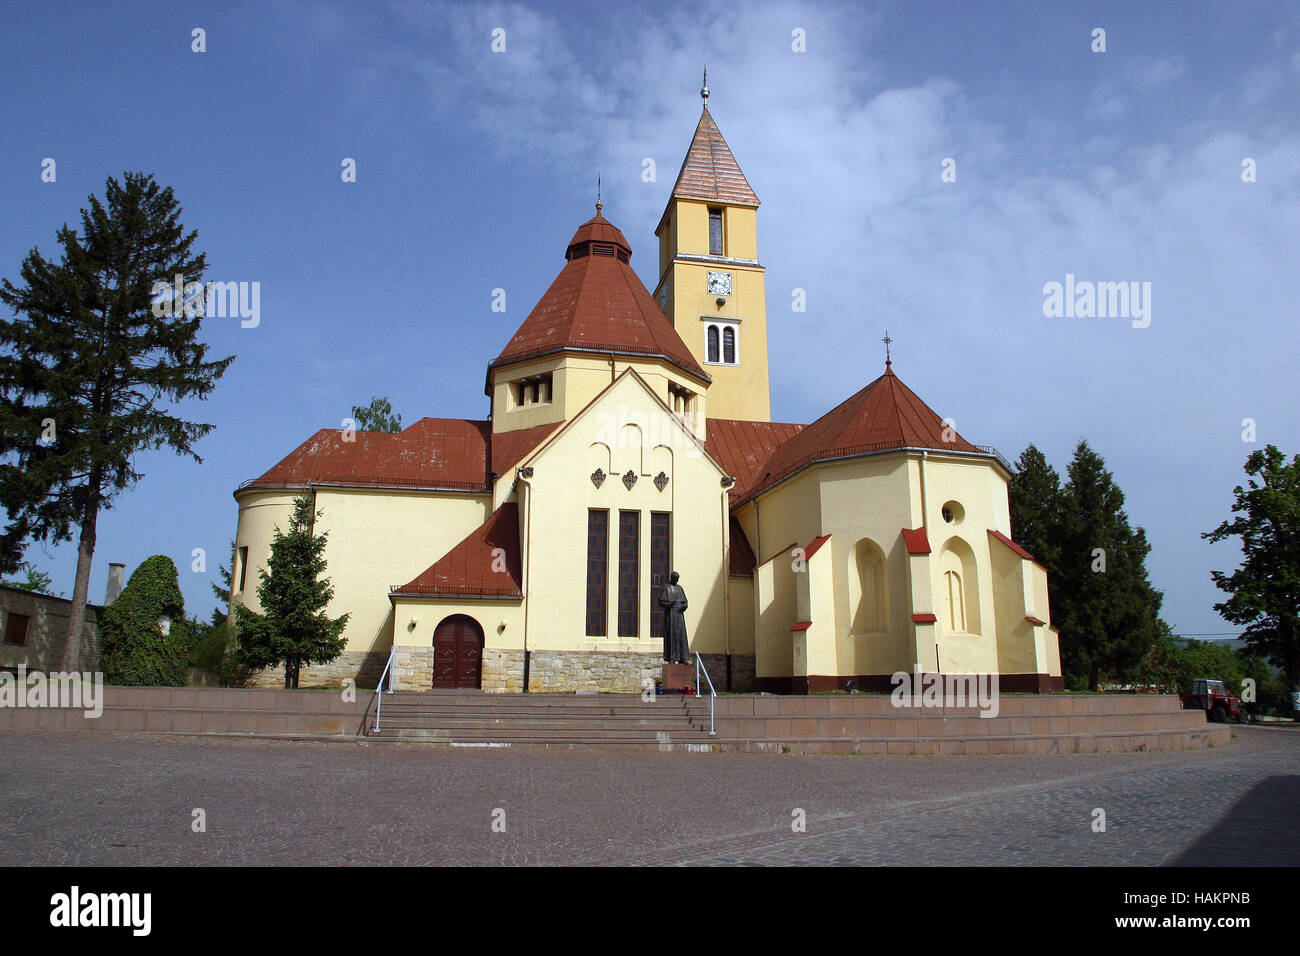 Parish church of the Holy Trinity in Krasic, Croatia Stock Photo